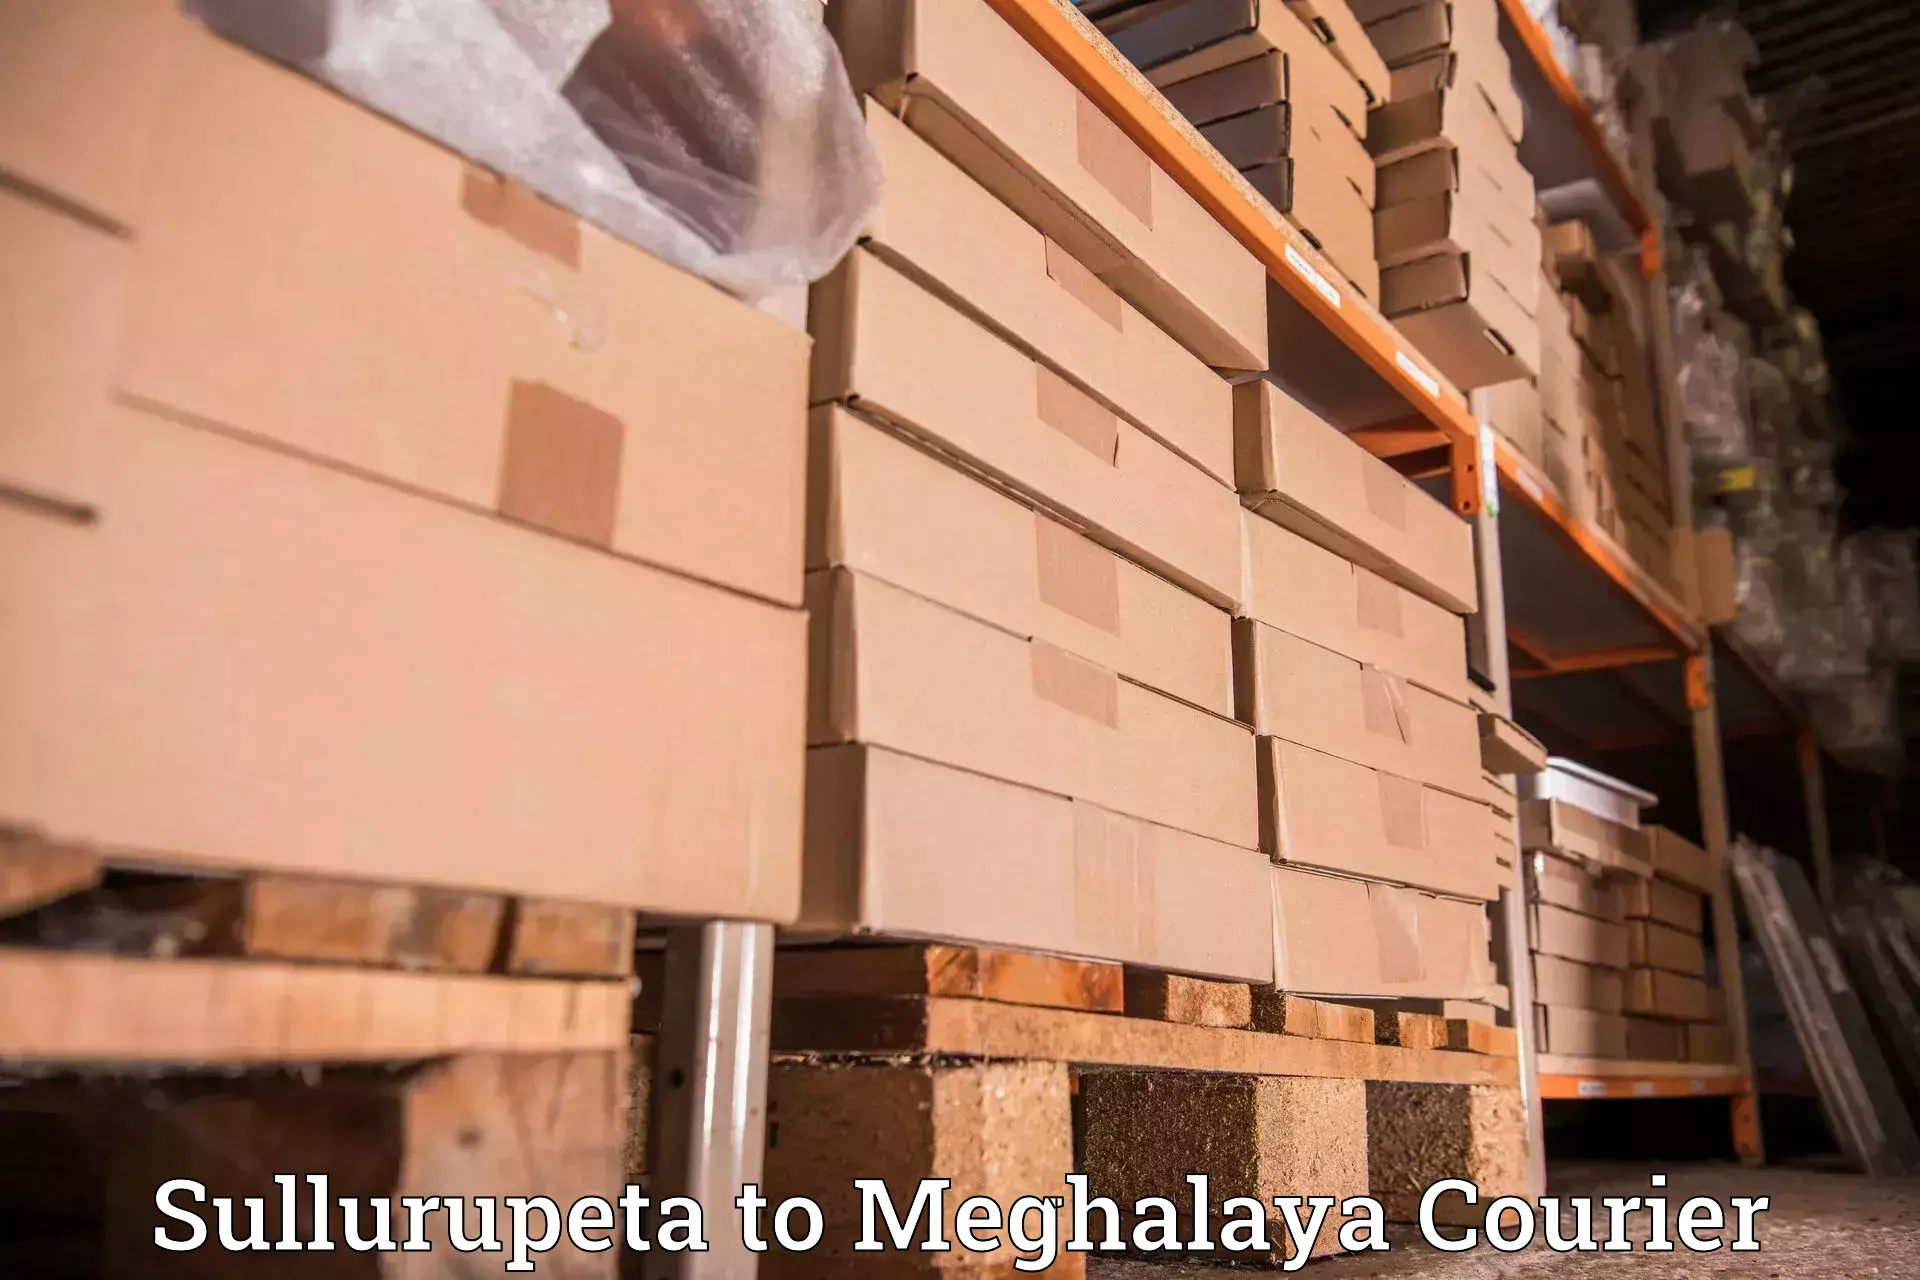 User-friendly delivery service Sullurupeta to Phulbari